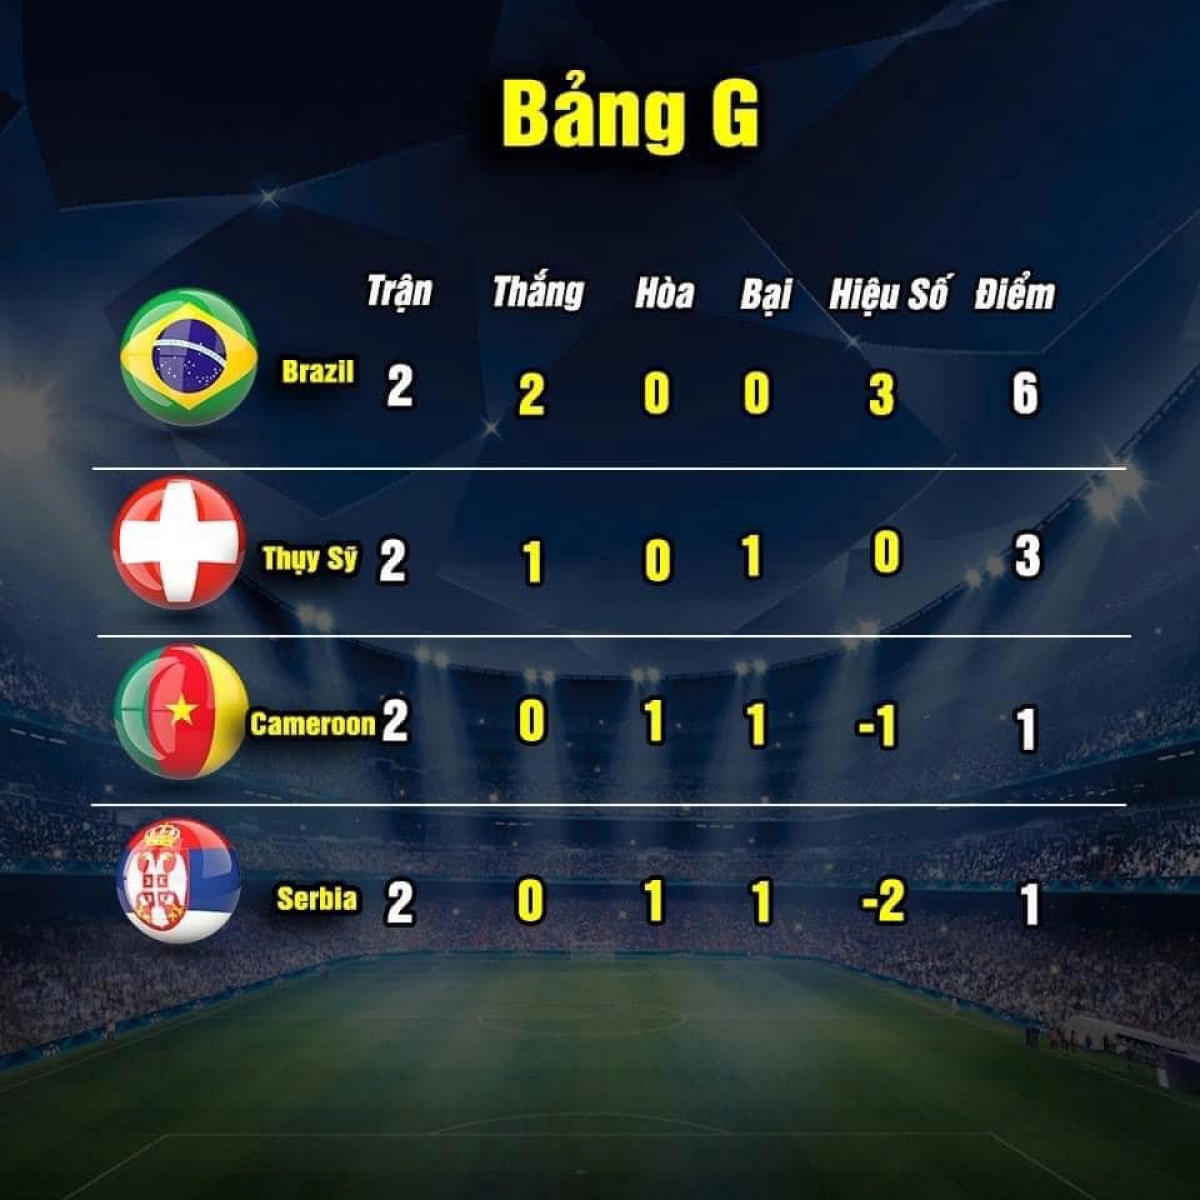 Cục diện bảng G sau hai lượt trận (ảnh: Thethao.vn) 